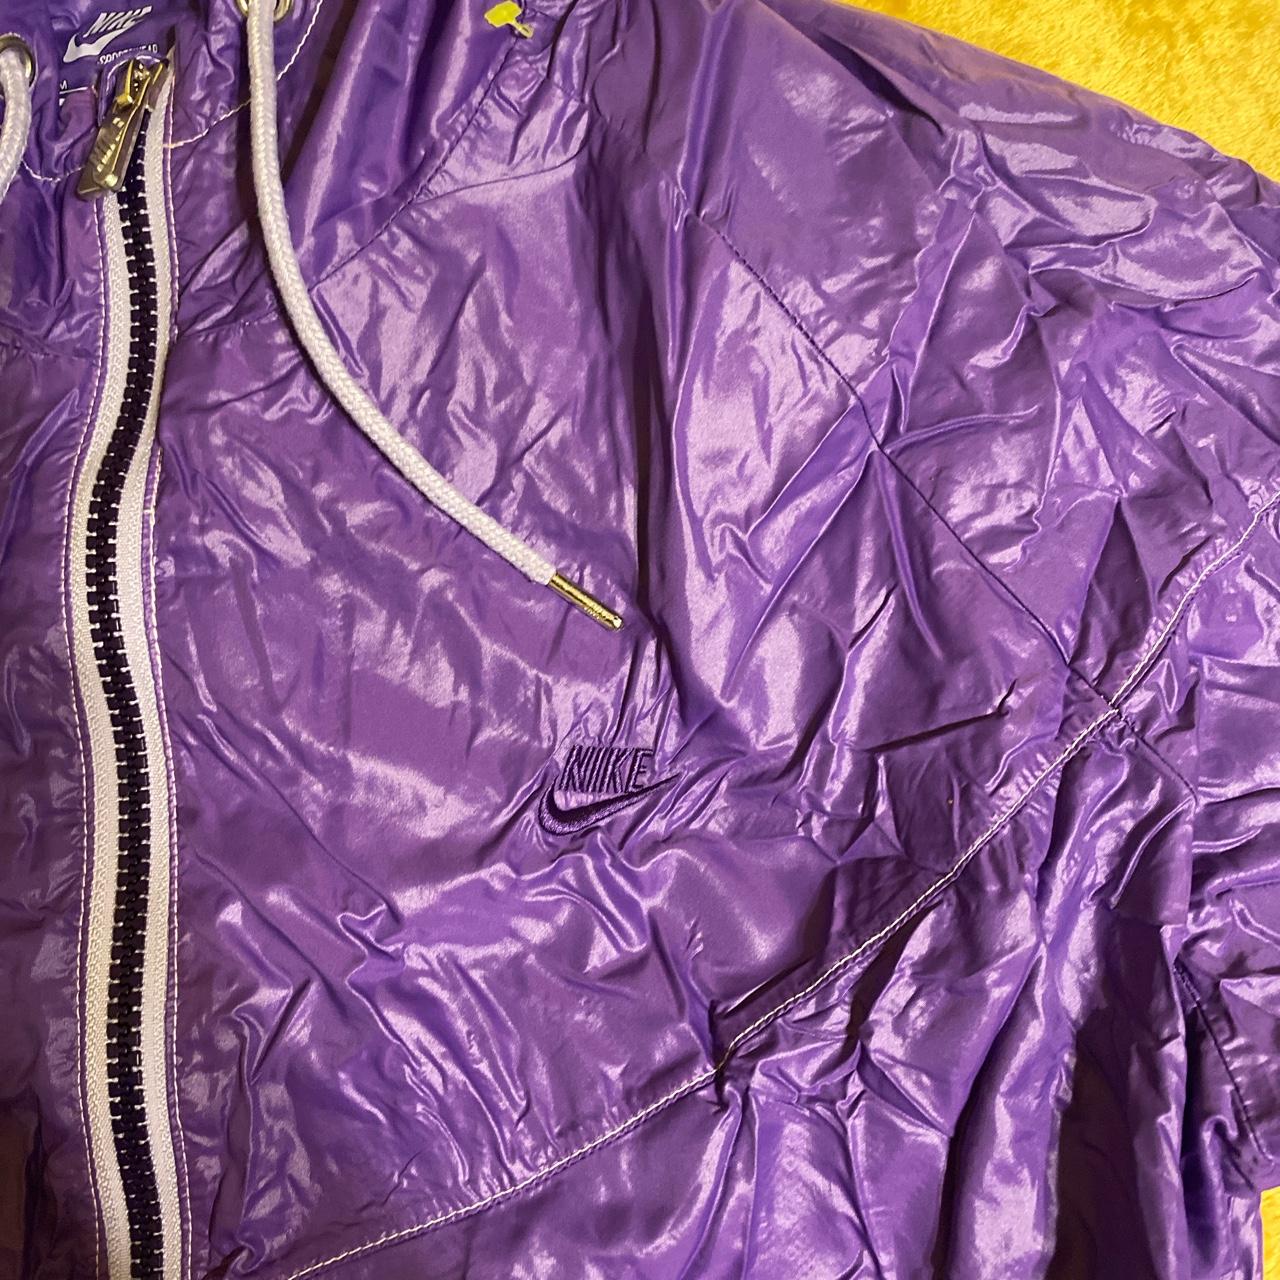 Purple Nike Windbreaker Jacket 🟪 ( I have This in... - Depop